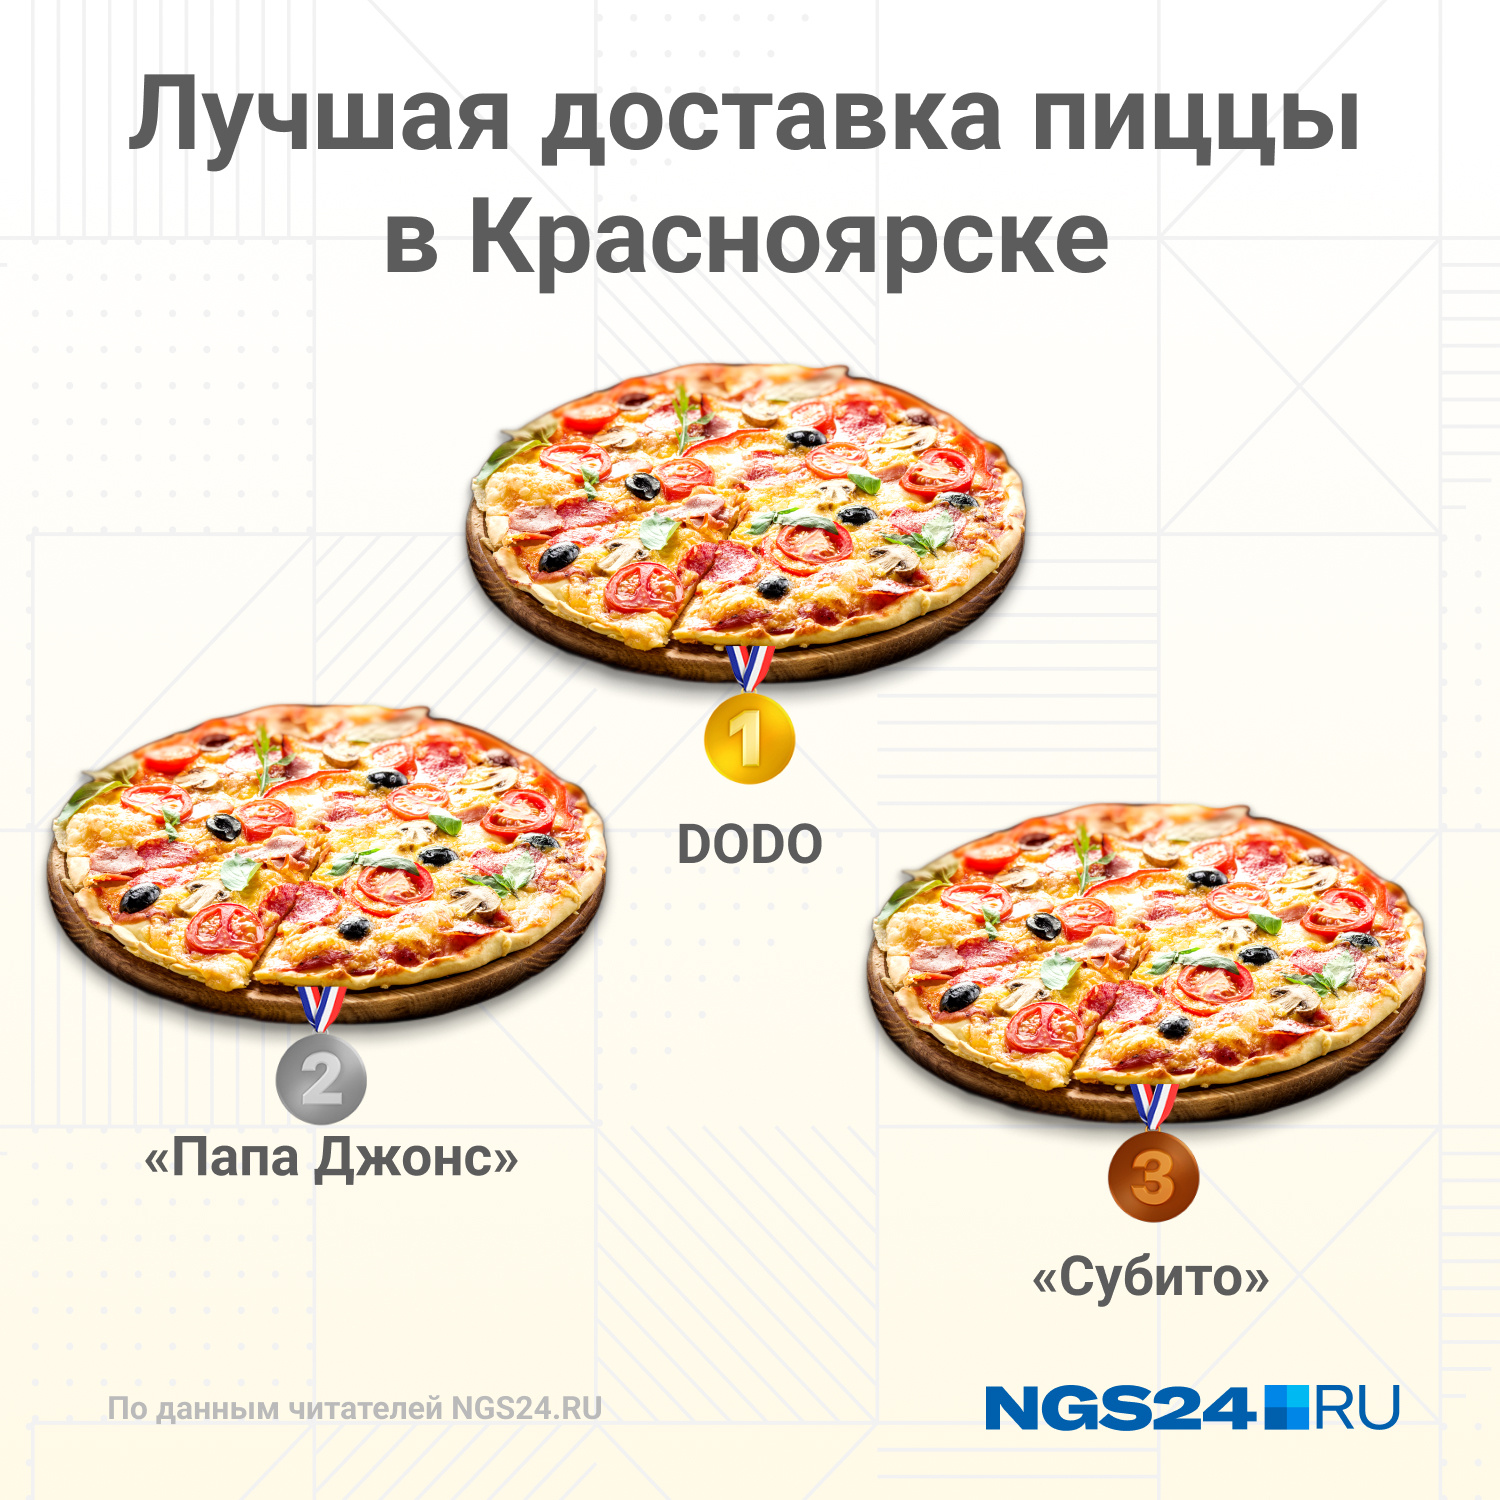 лучшая доставка пиццы красноярск (120) фото